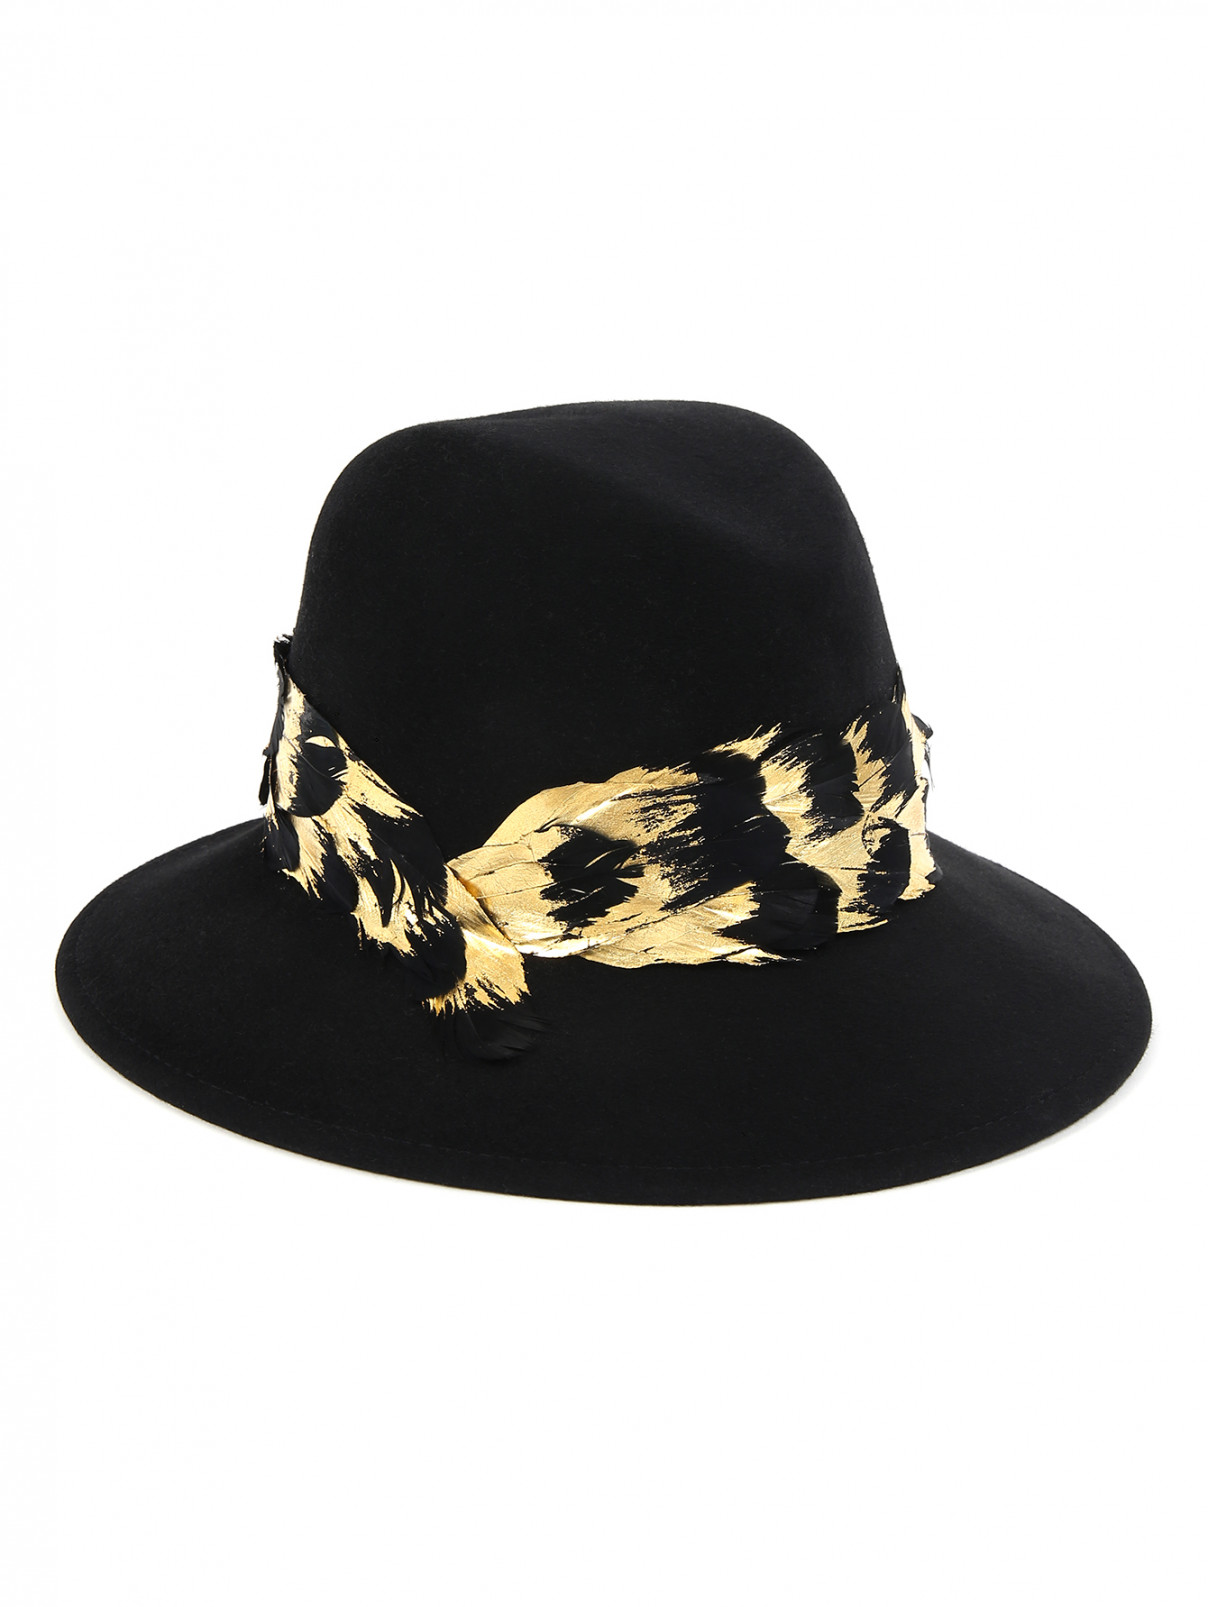 Шляпа из шерсти декорированная перьями Eugenia Kim  –  Общий вид  – Цвет:  Черный